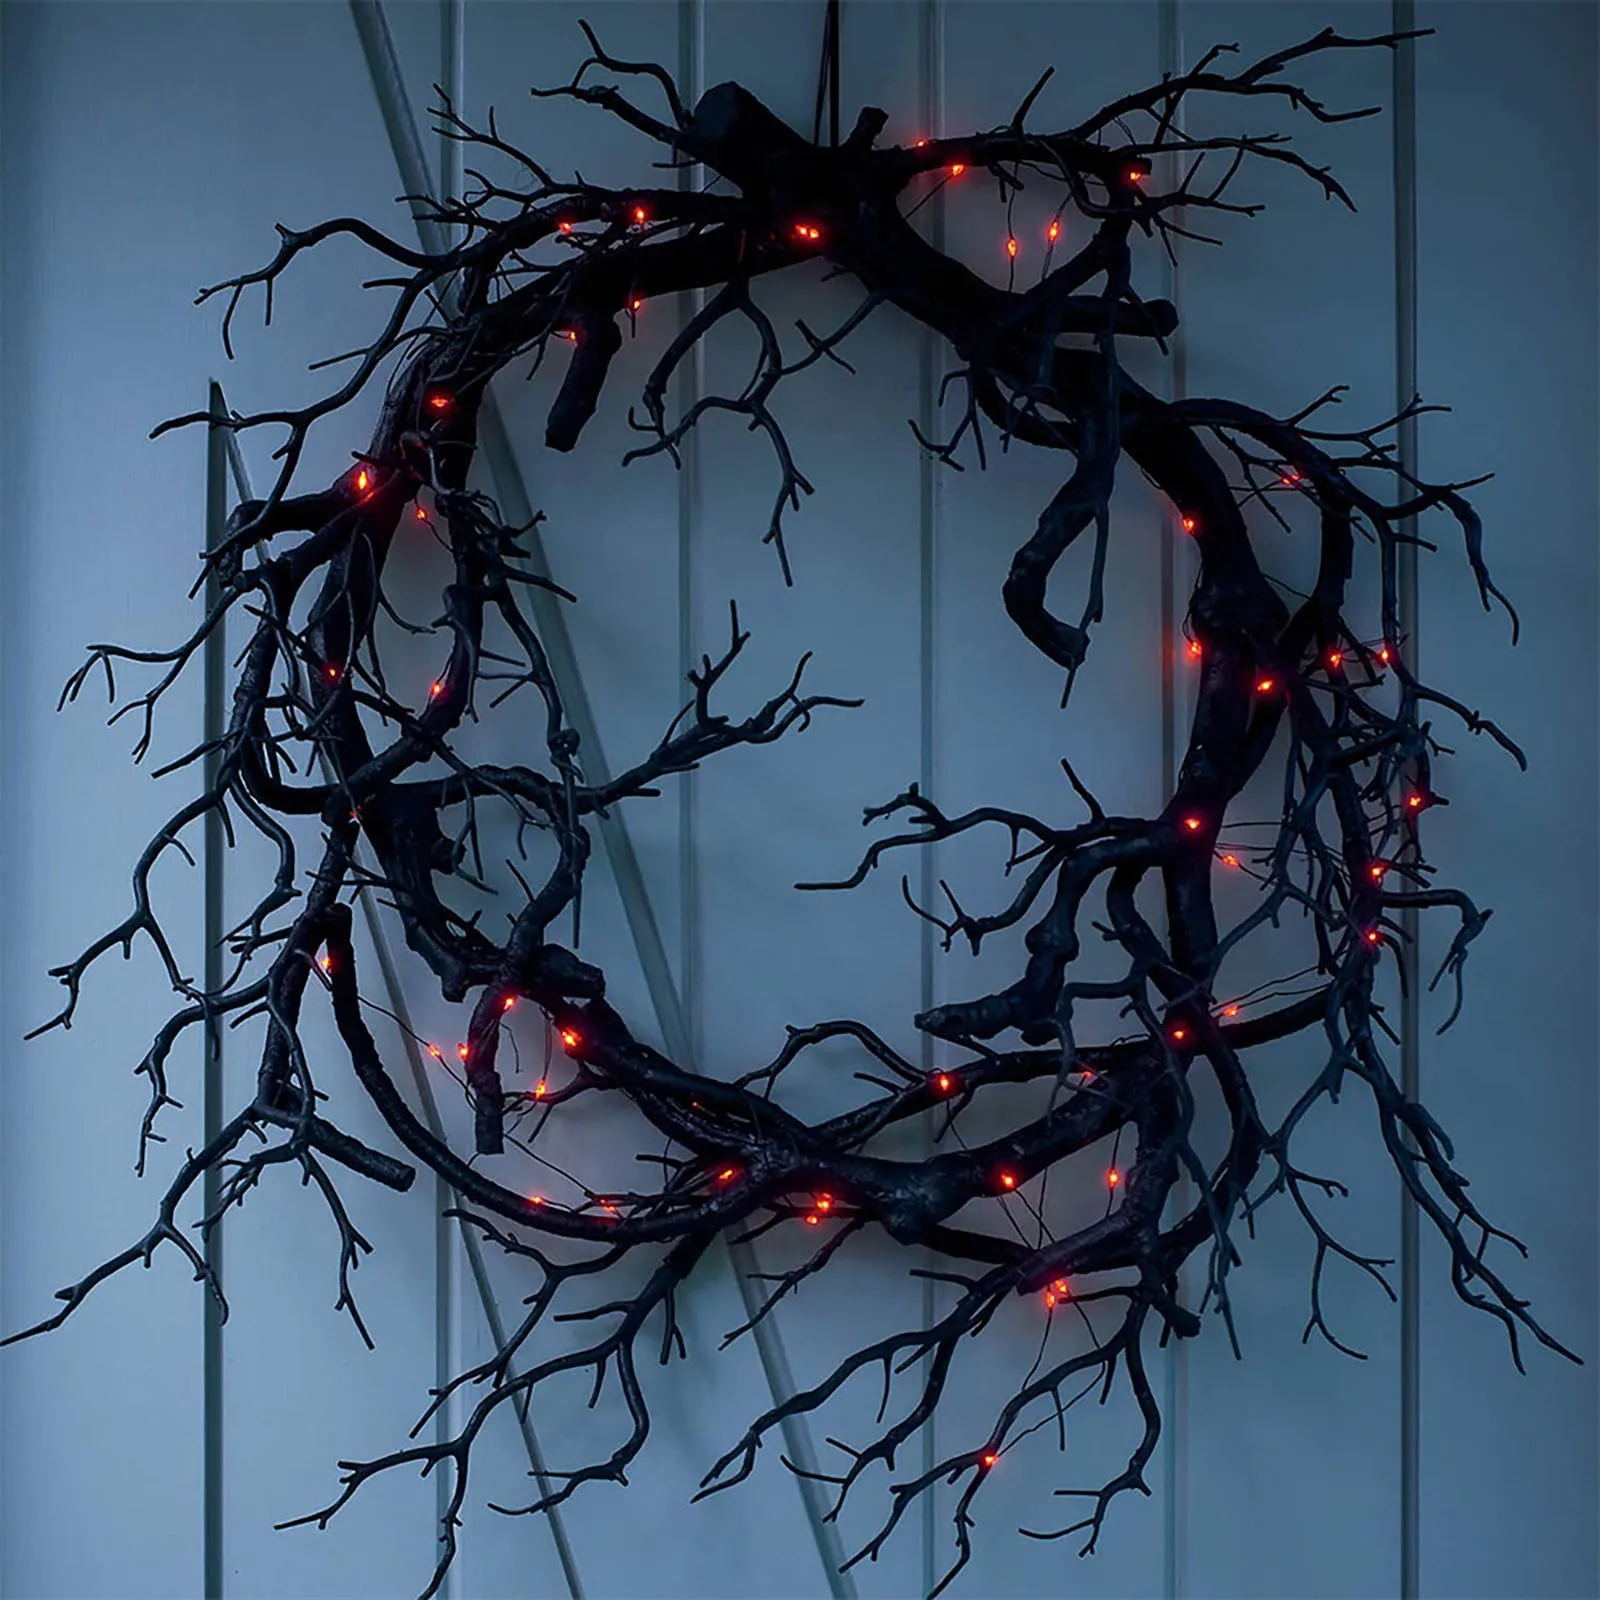 

Halloween Dead Branch Garland Decoration Glowing Black Branch Wreath Simulation Dead Branch Halloween Decoration